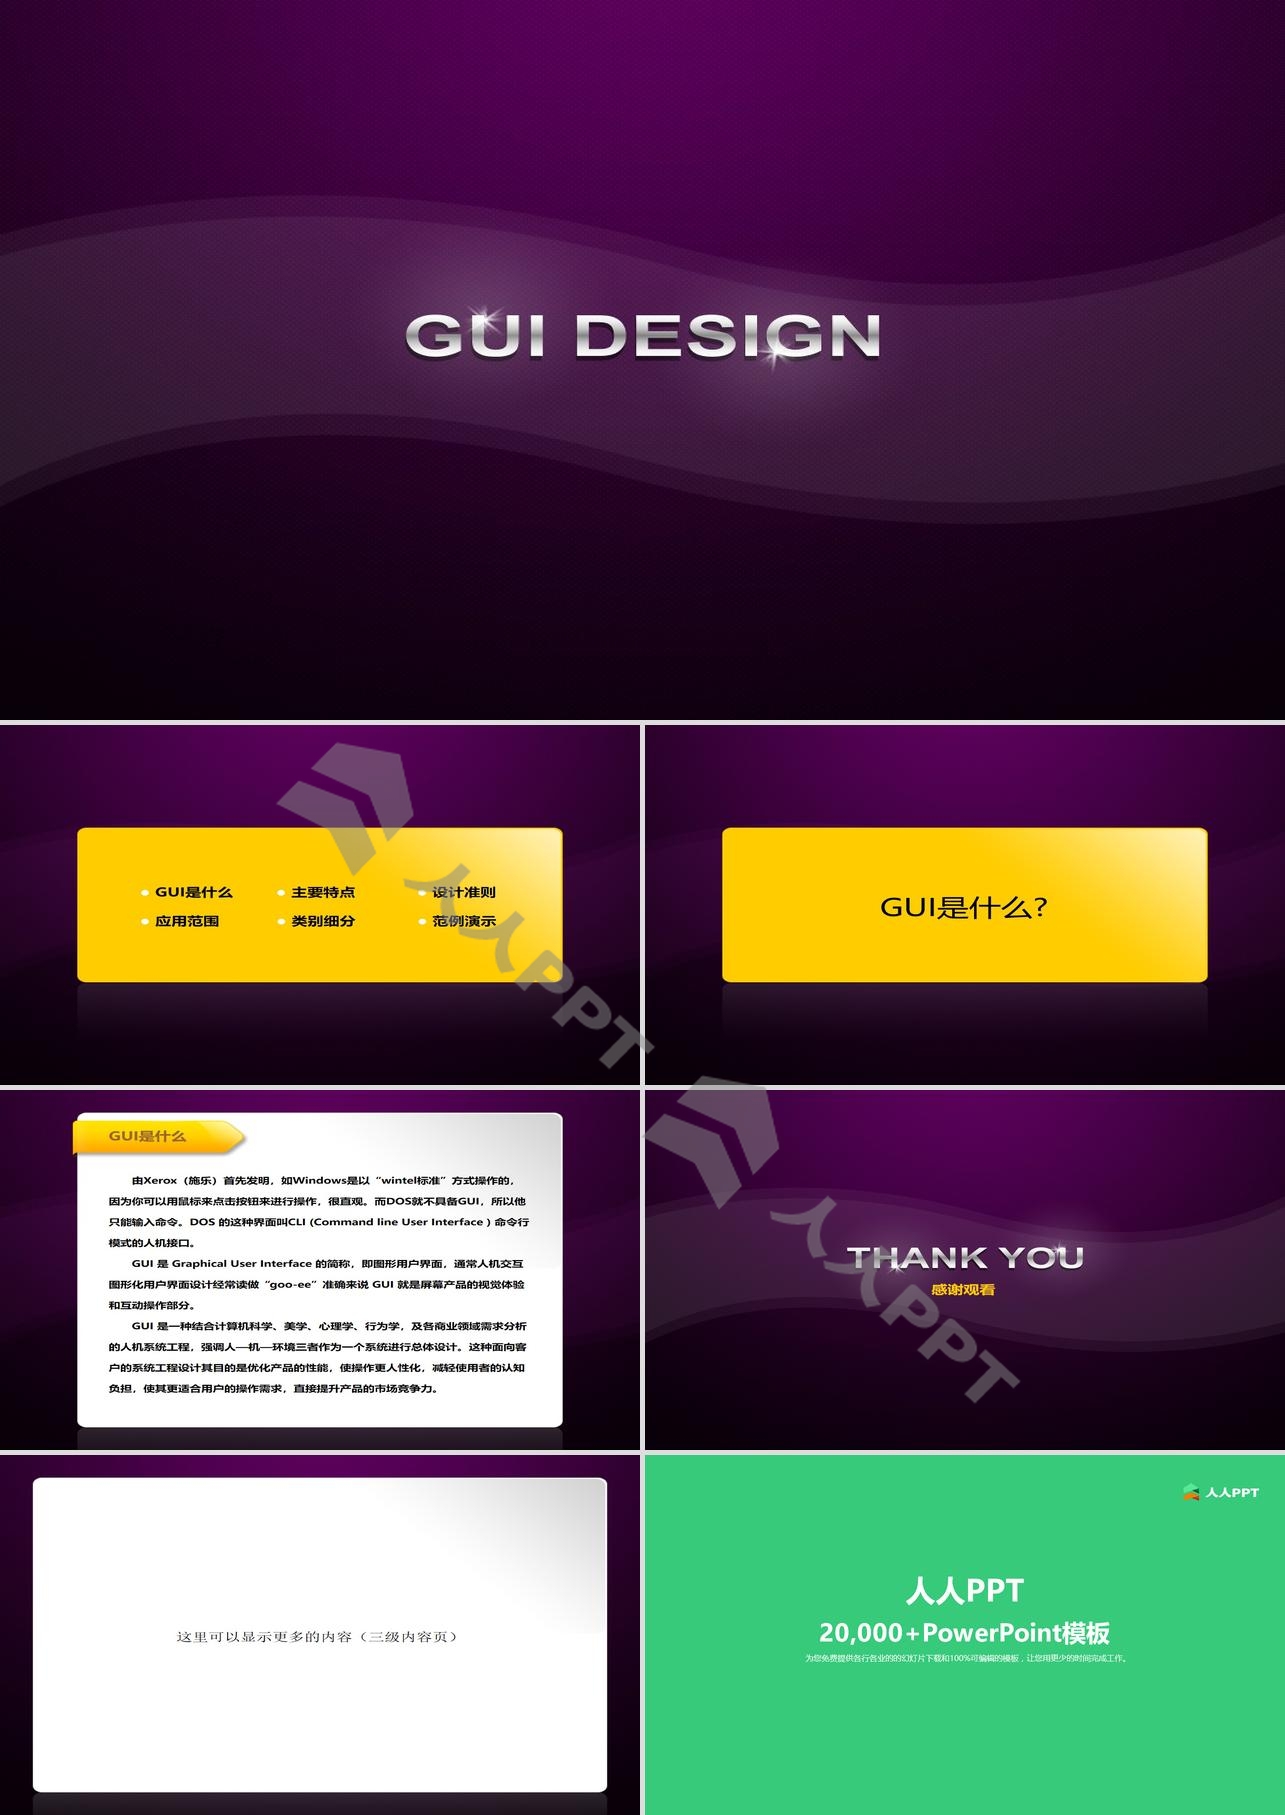 紫色精致的GUI设计幻灯片模板长图